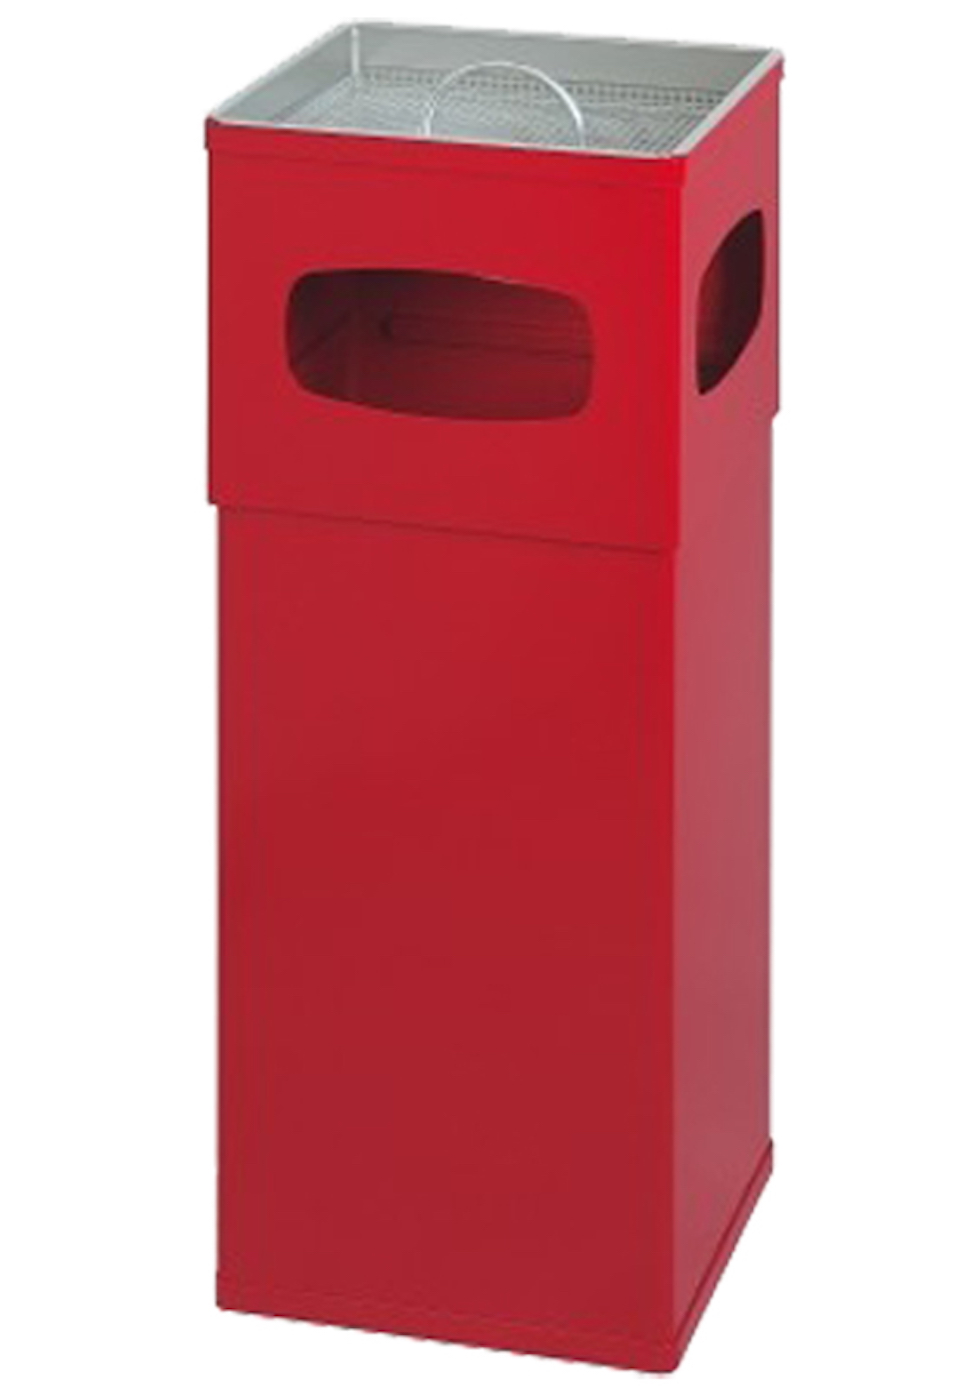 Kombiascher aus Aluminium mit Sieb | 50 Liter, HxBxT 82x30x30cm | Rot